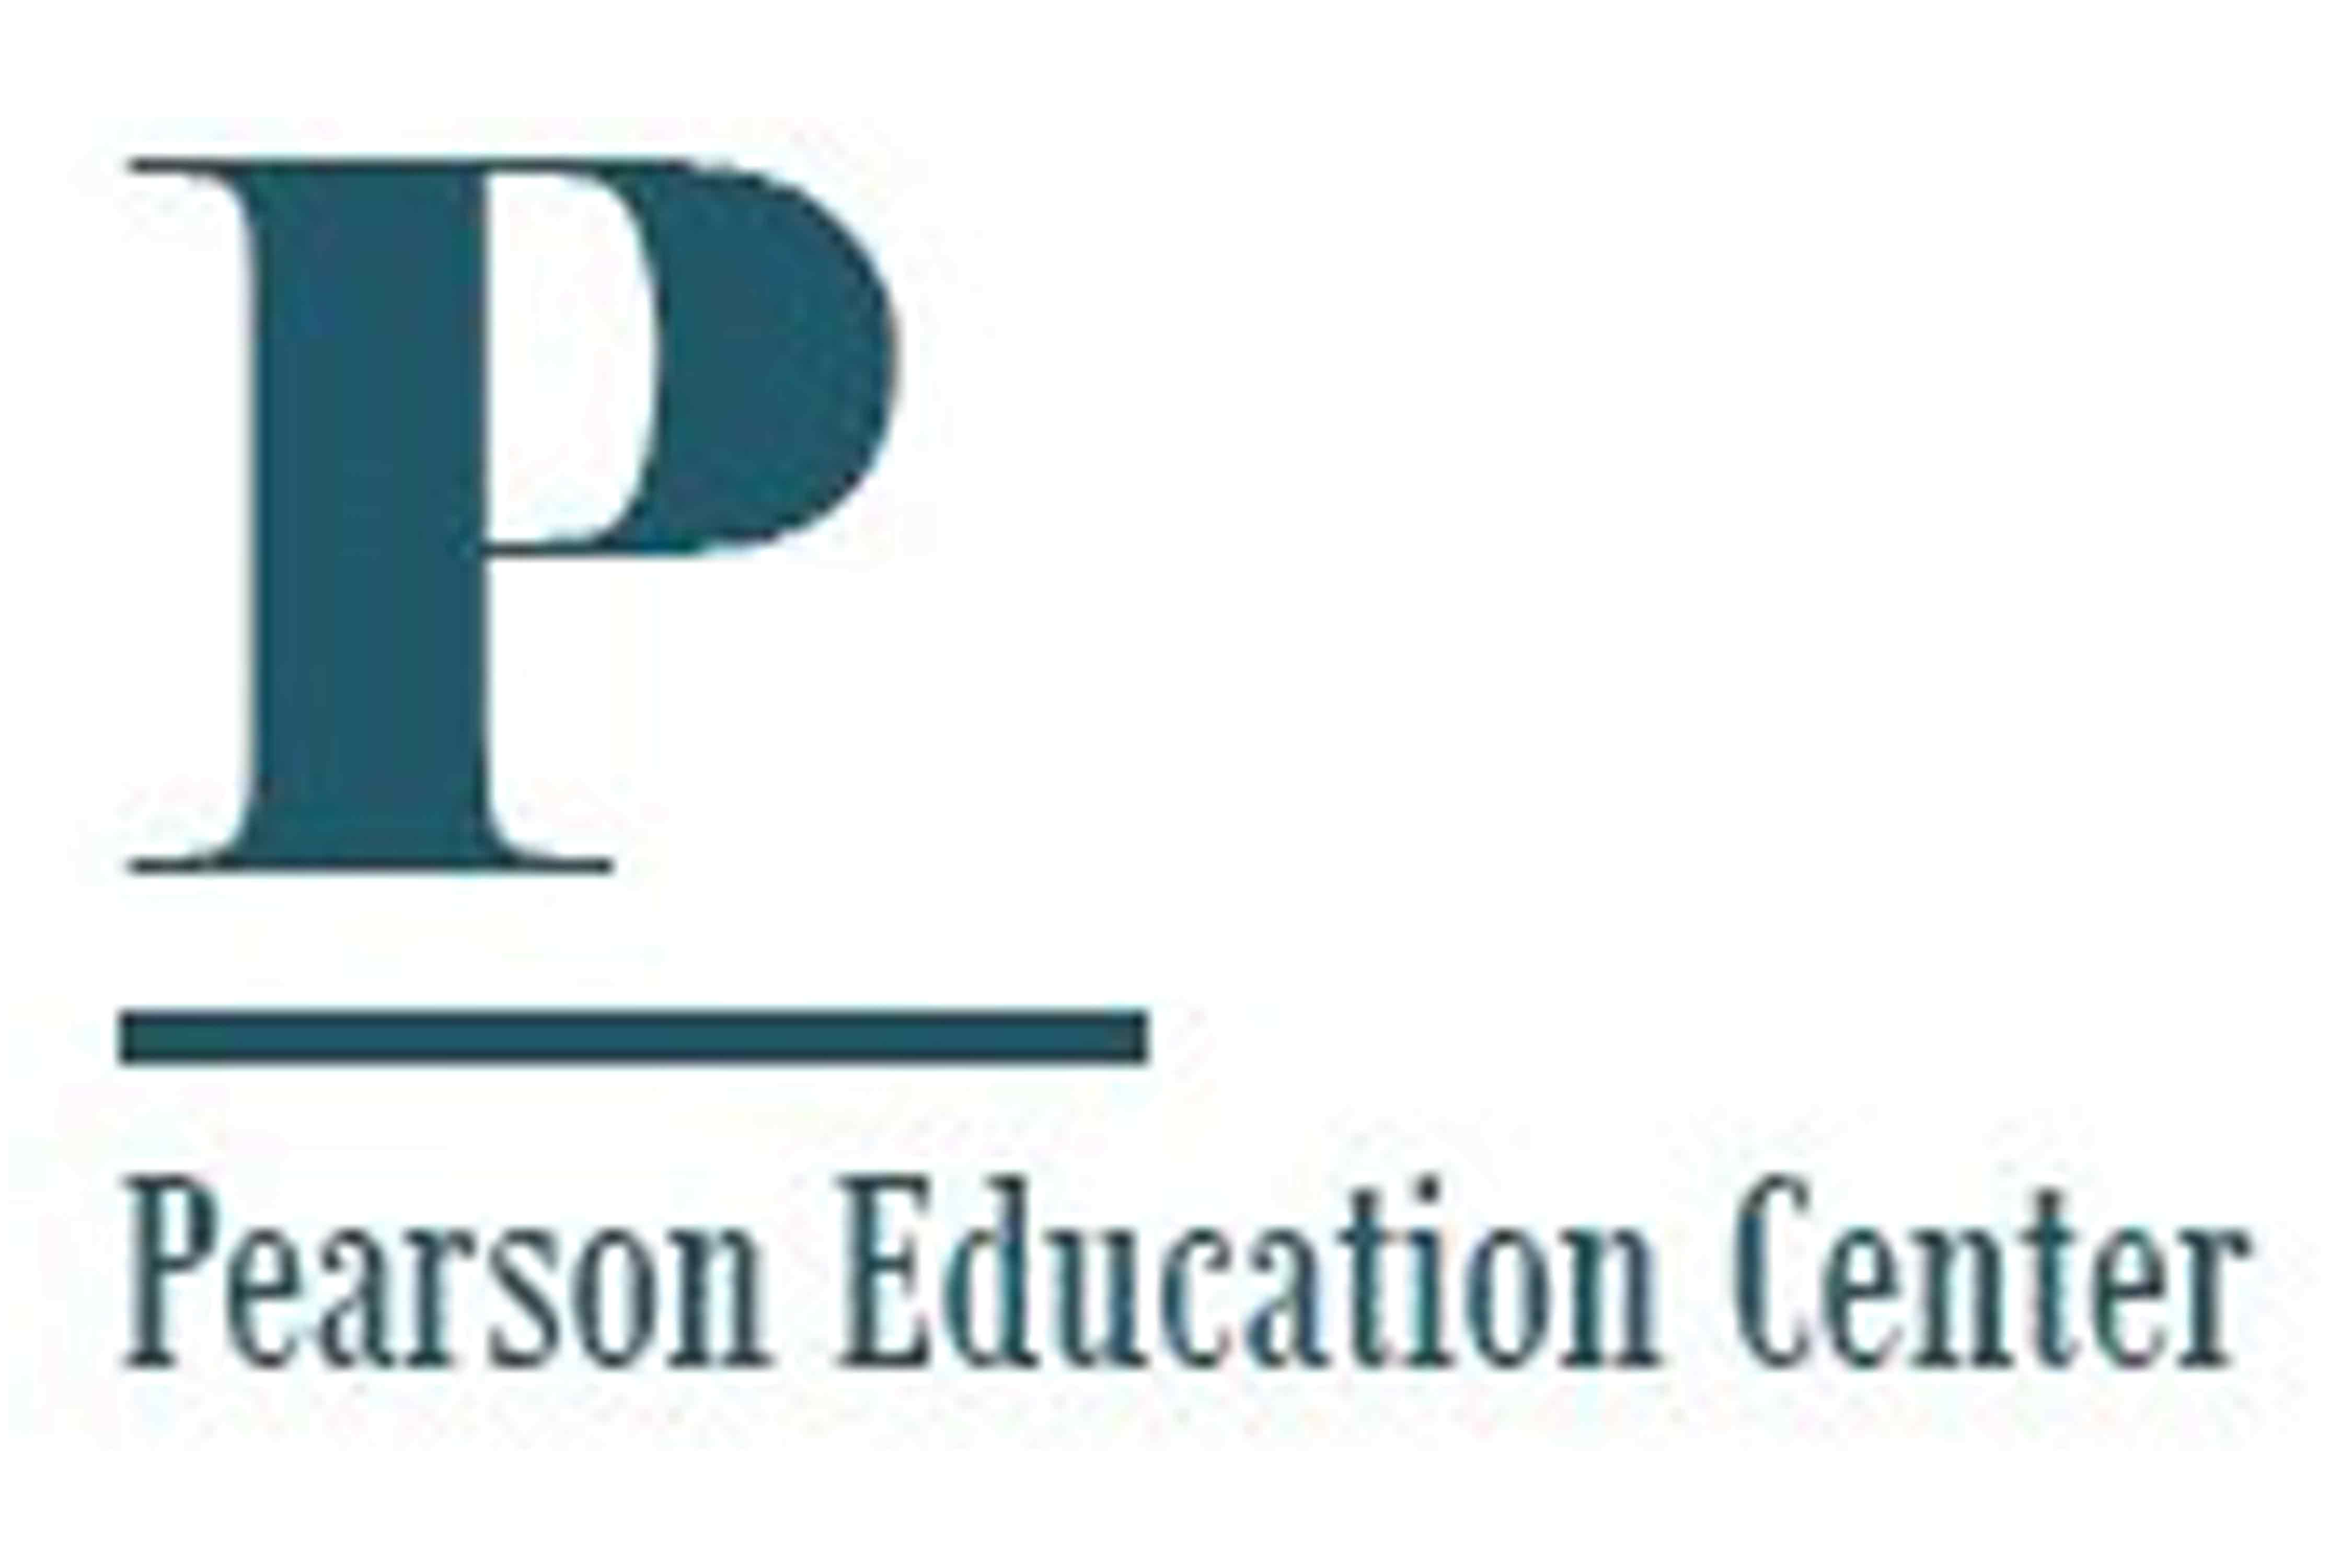 Pearson Education Center logo